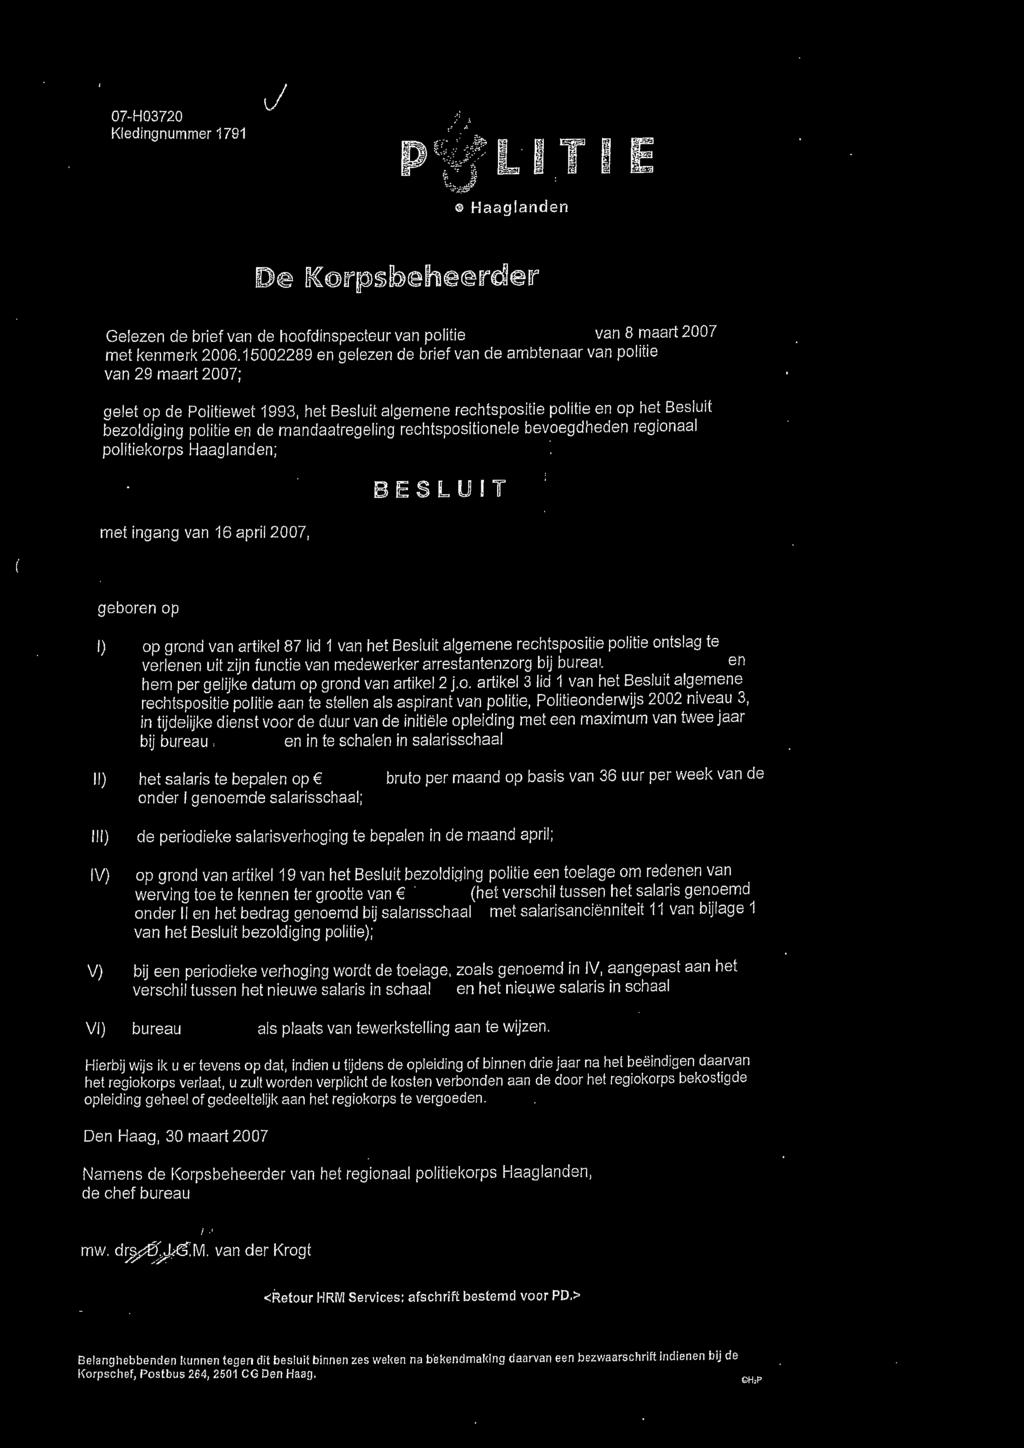 mandaatregeling rechtspositionele bevoegdheden regionaal politiekorps Haaglanden; met ingang van 16 april 2007, BIESLUIT geboren op l) op grond van artikel 87 lid 1 van het Besluit algemene